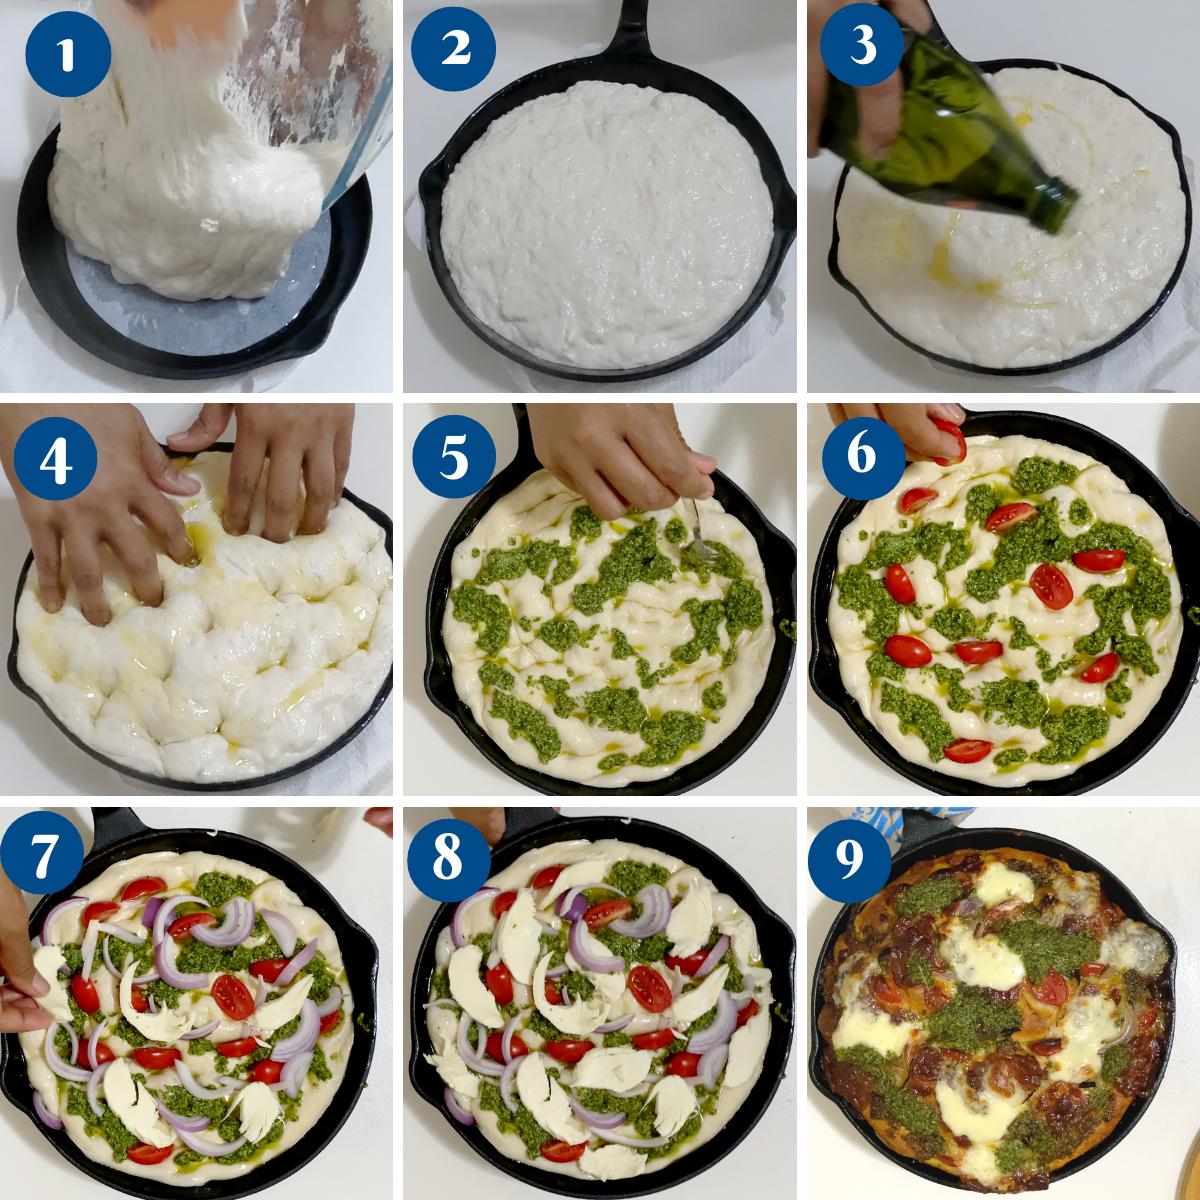 Ingredients for making sourdough pesto focaccia. 